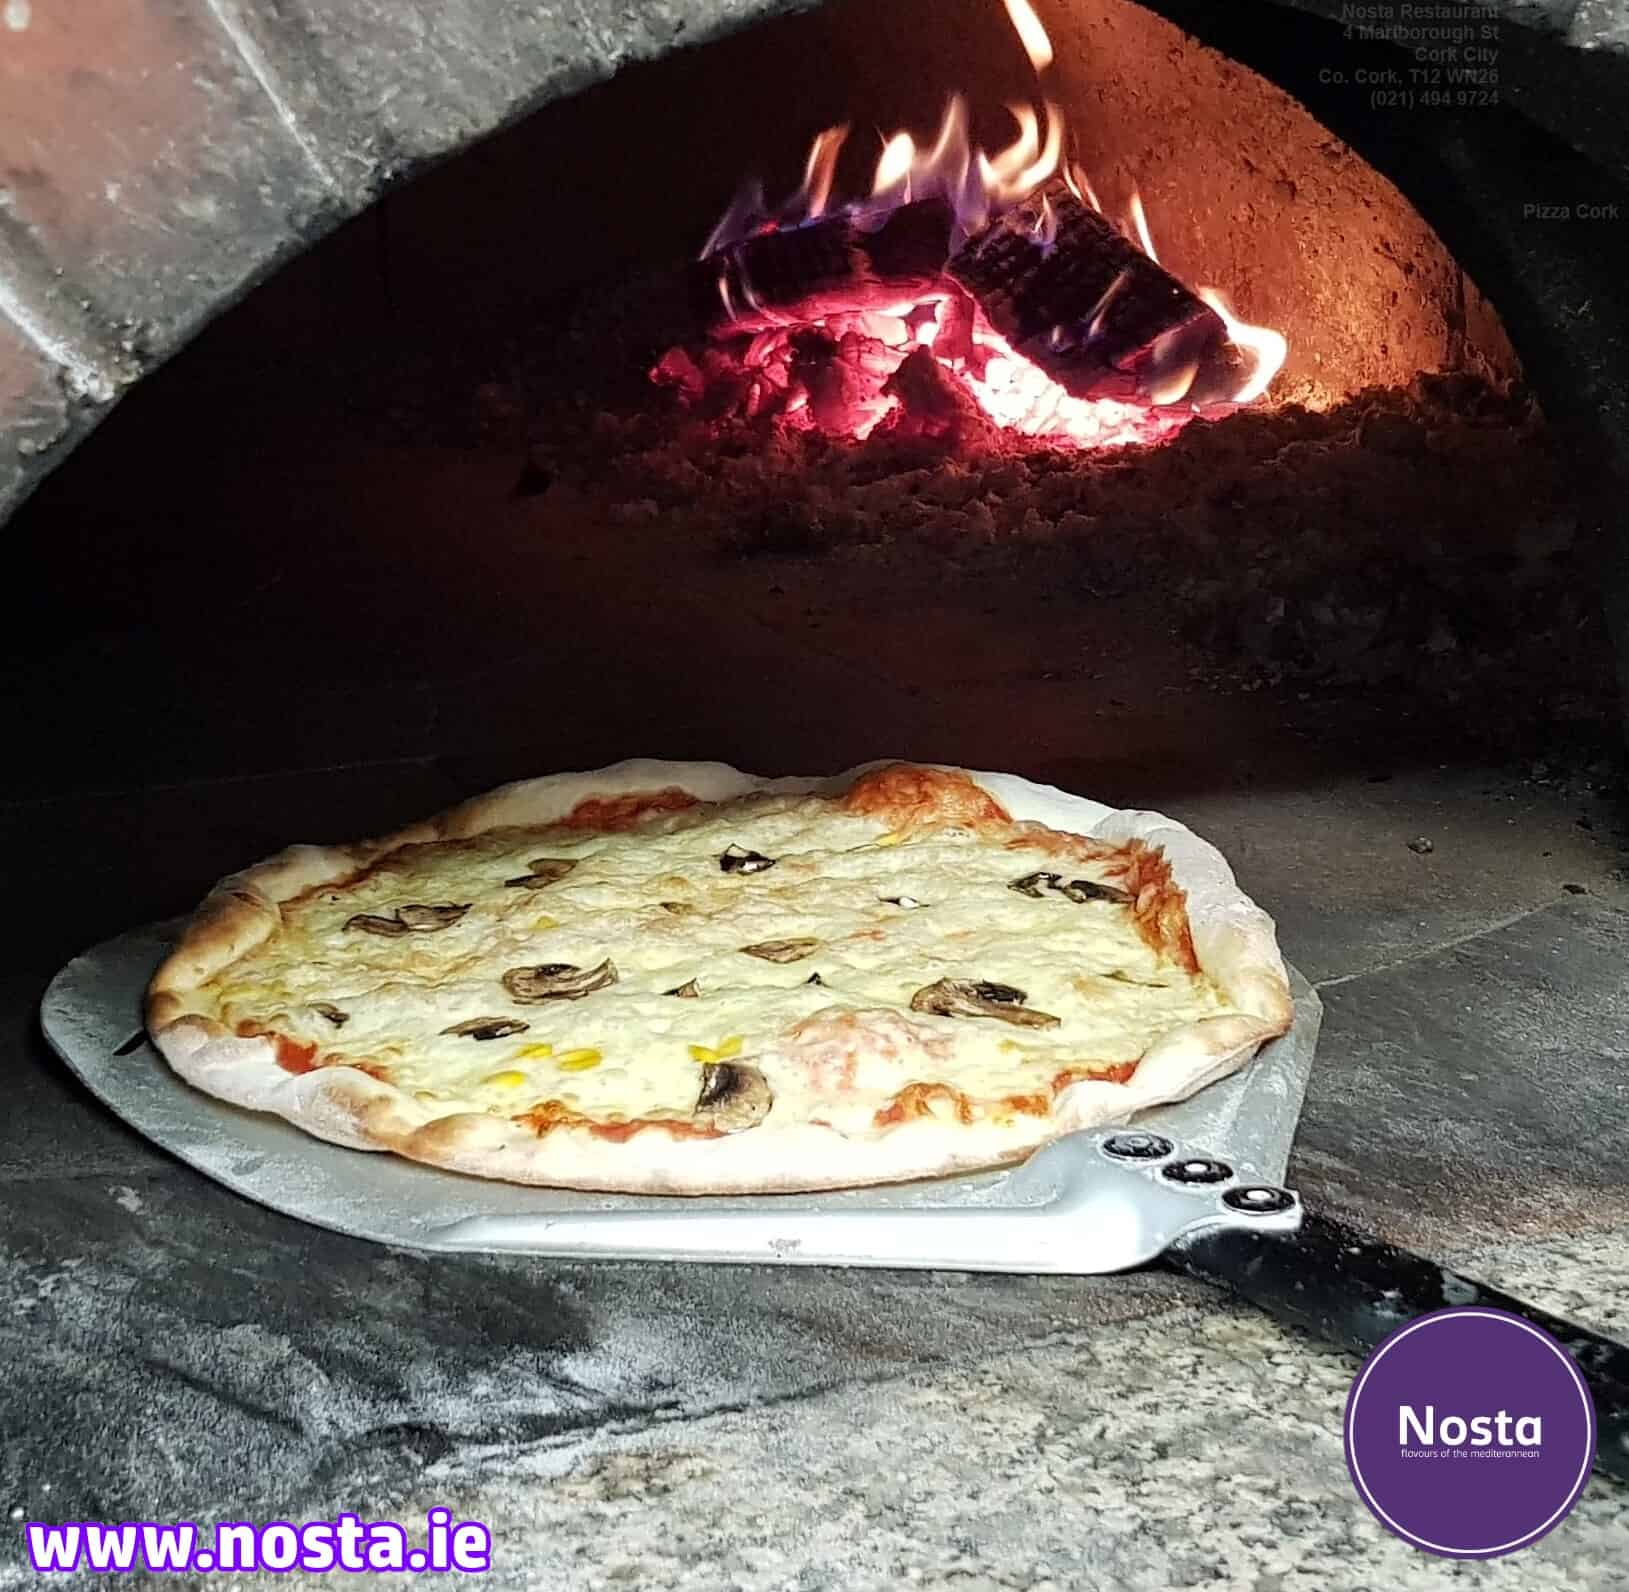 Firewood pizza - Nosta restaurant Cork